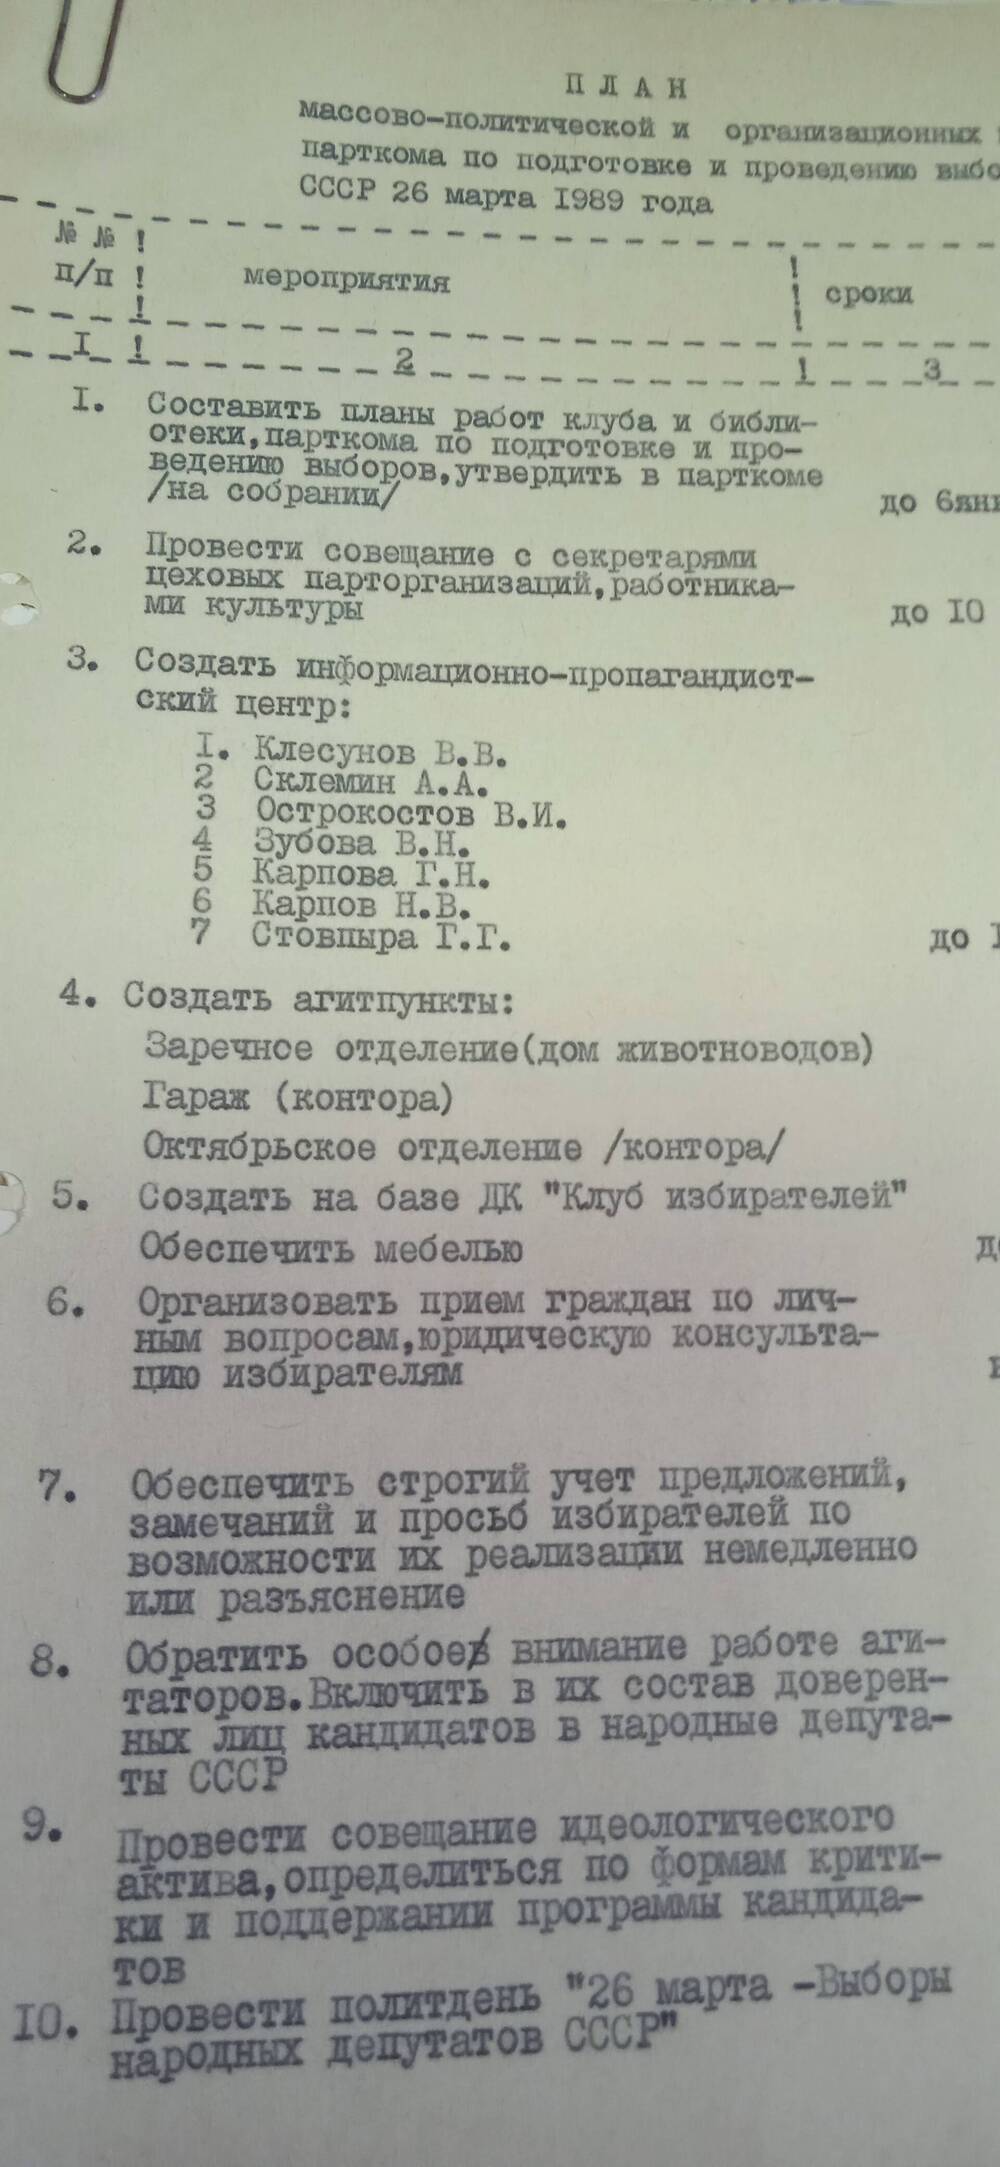 План  массово-политической и организационных мероприятий парткома по подготовке  и проведению выборов народных депутатов СССР 26 марта 1989 года.